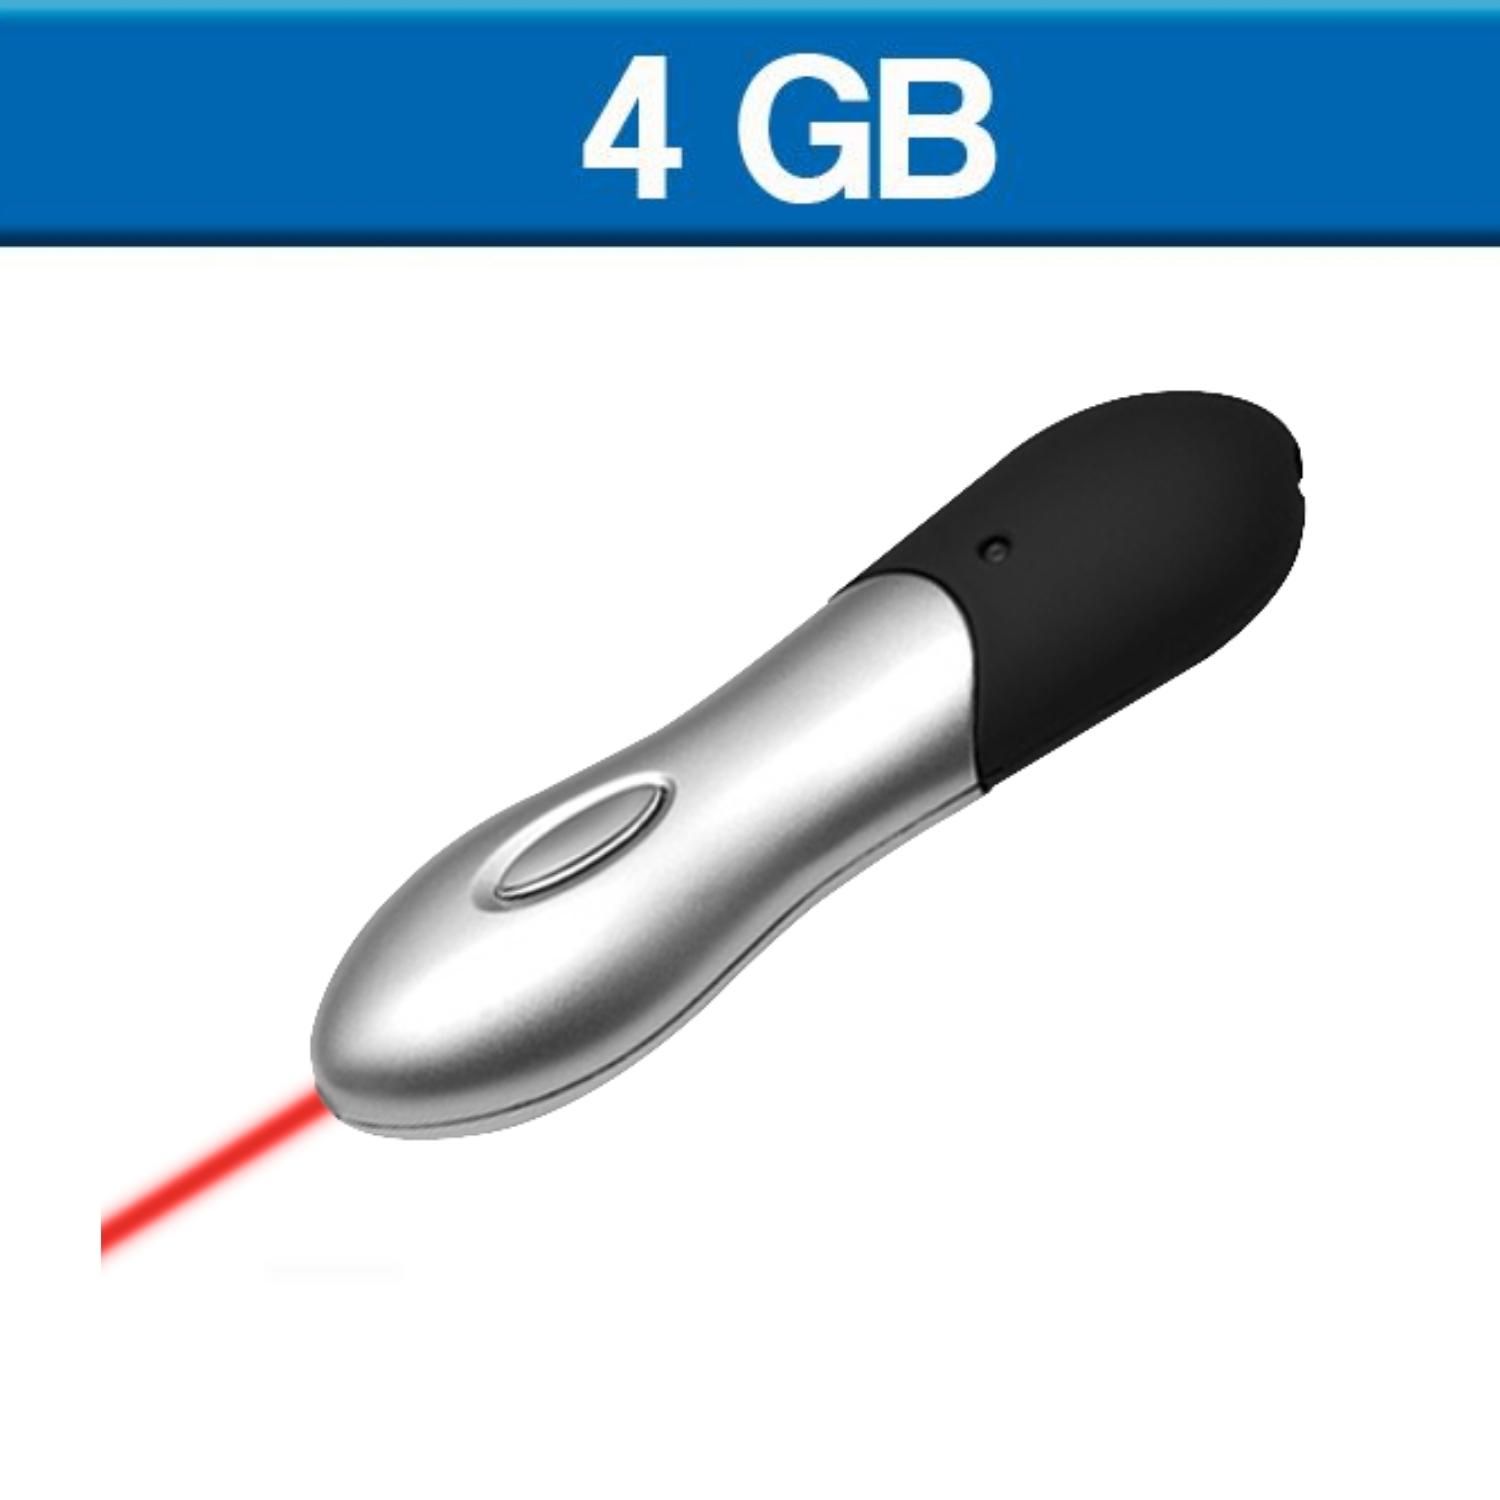 USB con señalador laser 4 GB, sobre pedido.